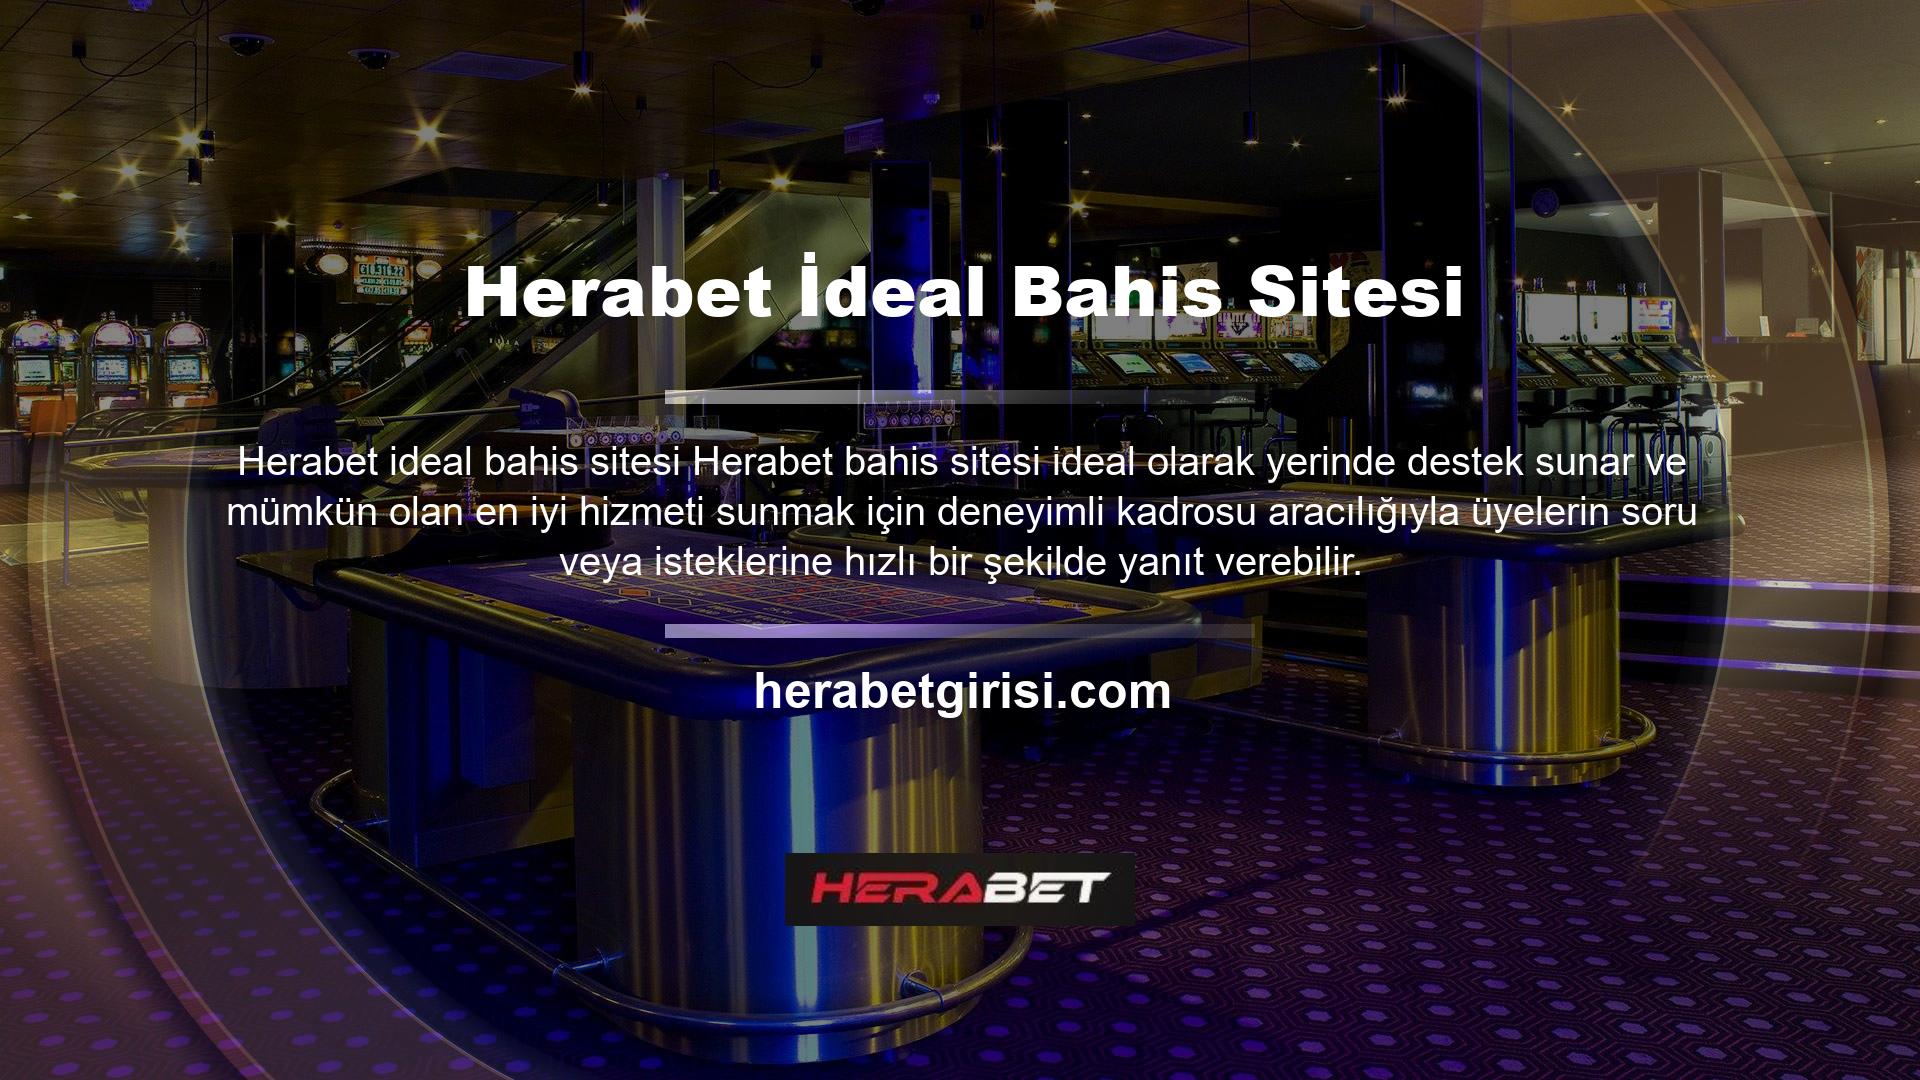 Herabet, yüksek oranları ve kaliteli oyunlarıyla adından sıkça söz ettiren bir bahis şirketidir